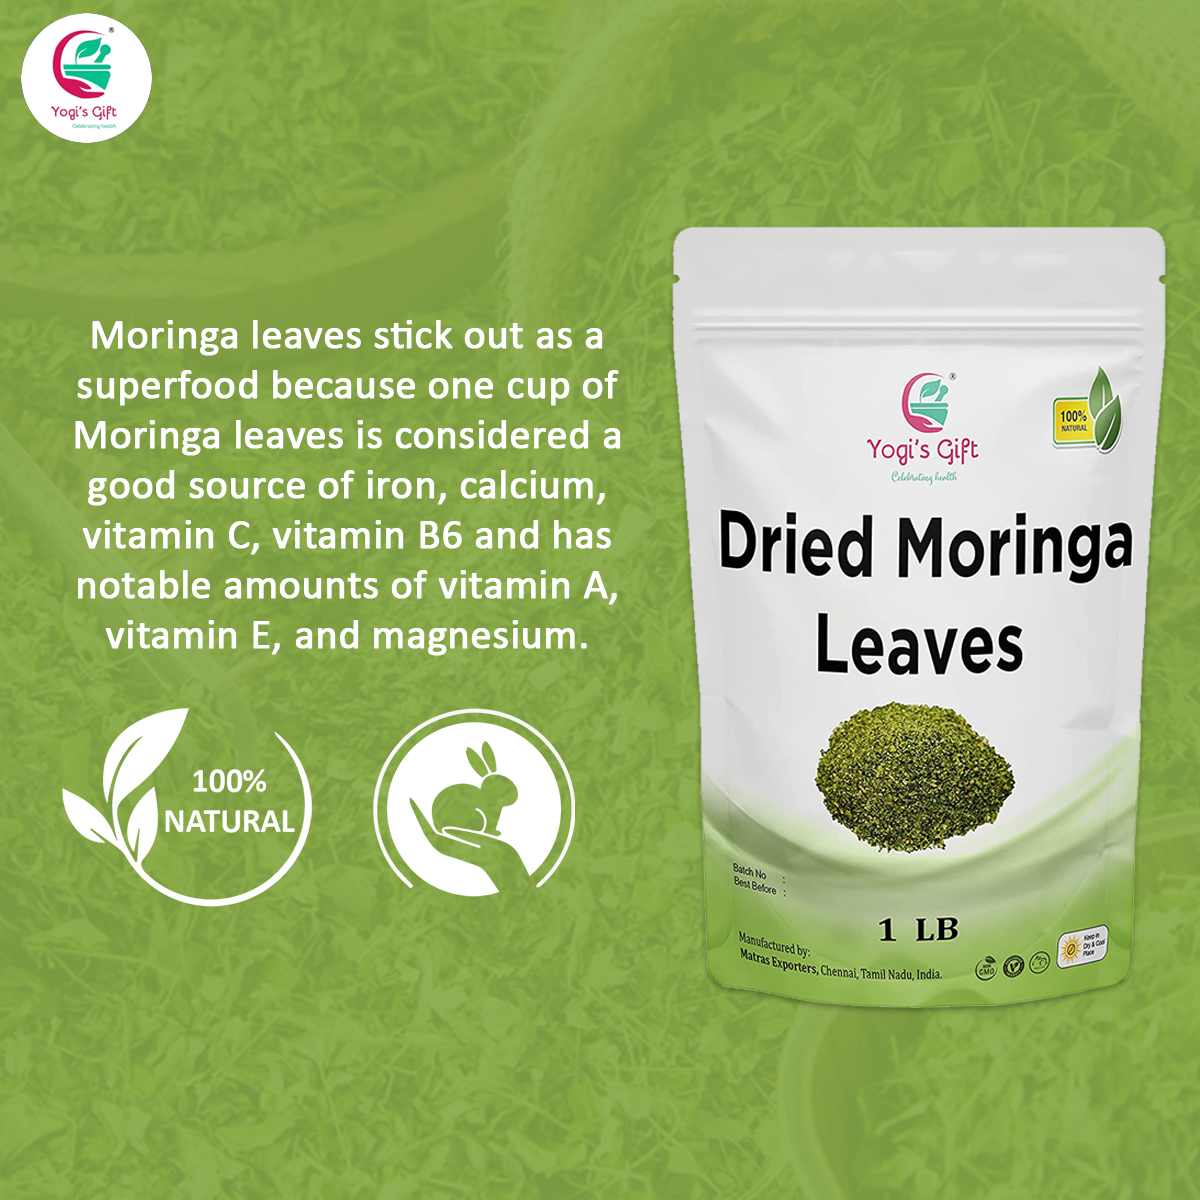 Moringa Leaves Loose 1 LB | Make tea, Springle on Salad, Ground and Use It | 100% Natural Moringa Leaf Only No Stems | Te De Moringa | Yogi's Gift®